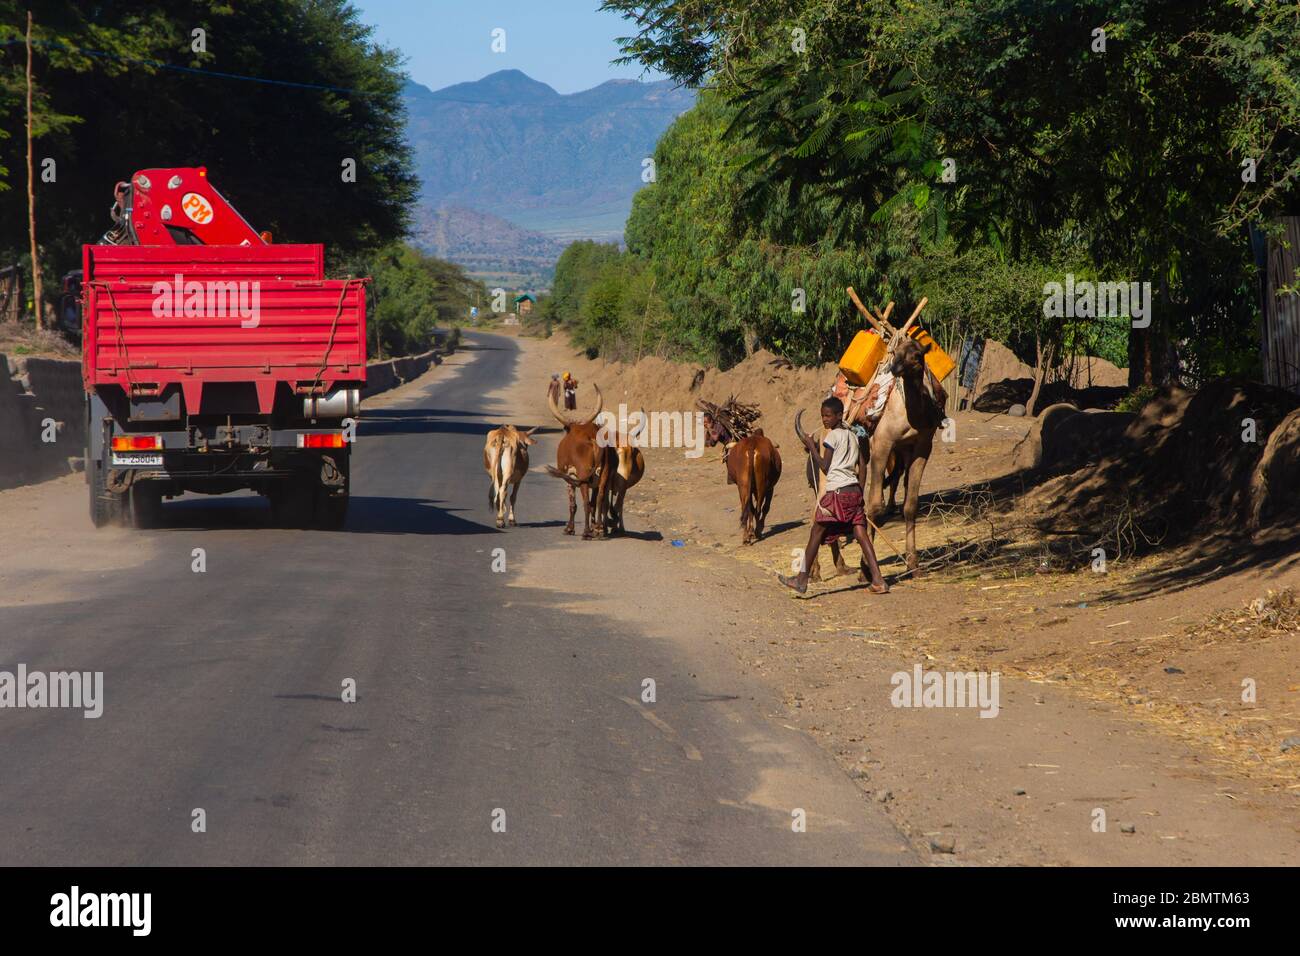 KOREM, Ethiopie - novembre 2018: Bétail et chameau transportant des choses sur la route entre la circulation sur la route éthiopienne Banque D'Images